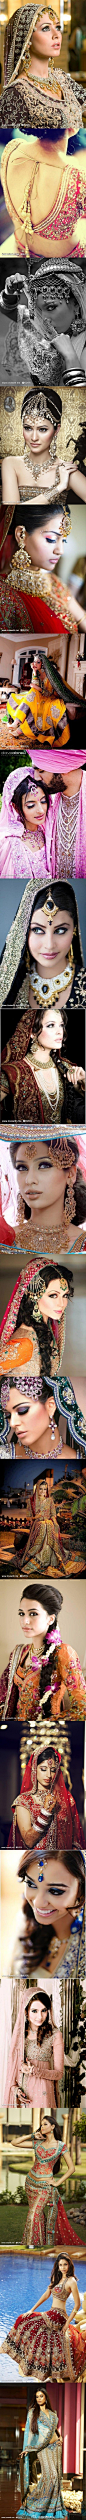 #婚纱礼服#印度新娘华丽的服饰和珠宝，让其美艳异常。深邃的眼睛，有多少人能给抗拒？http://www.lovewith.me/share/detail/all/28356